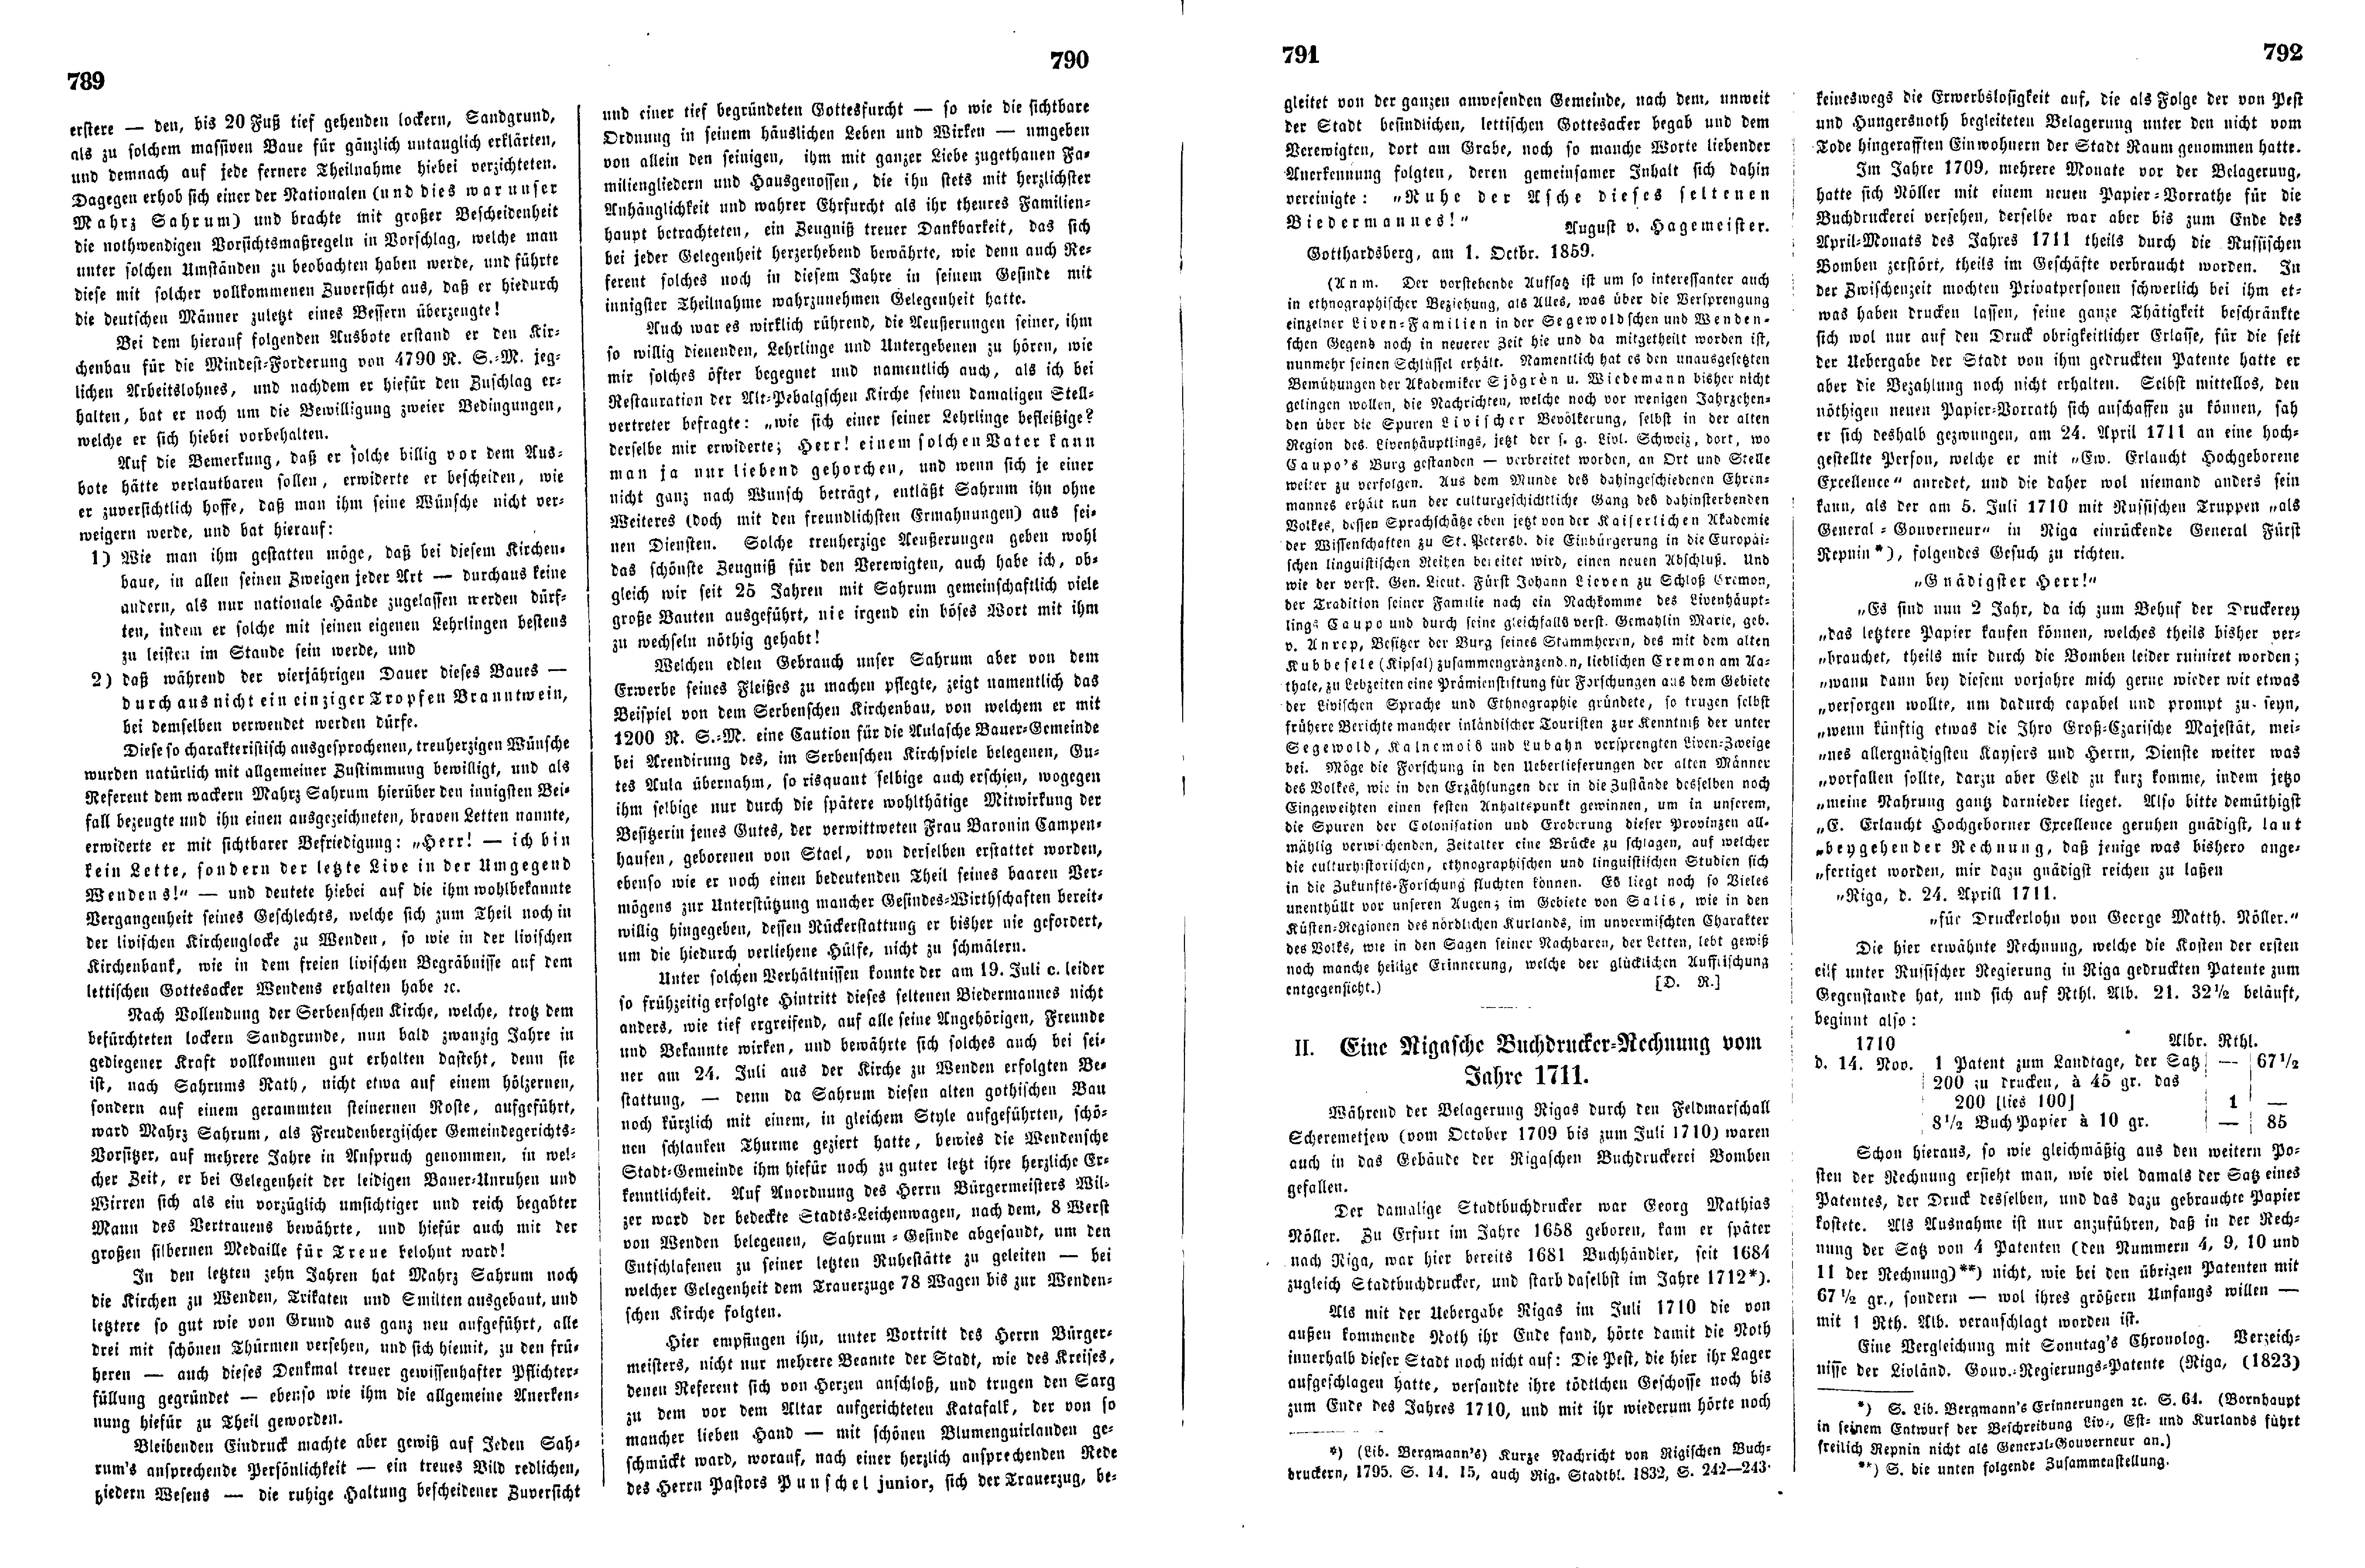 Mahrs Sahrum, der letzte Live in der Umgegend Wenden's (1859) | 2. (789-792) Haupttext